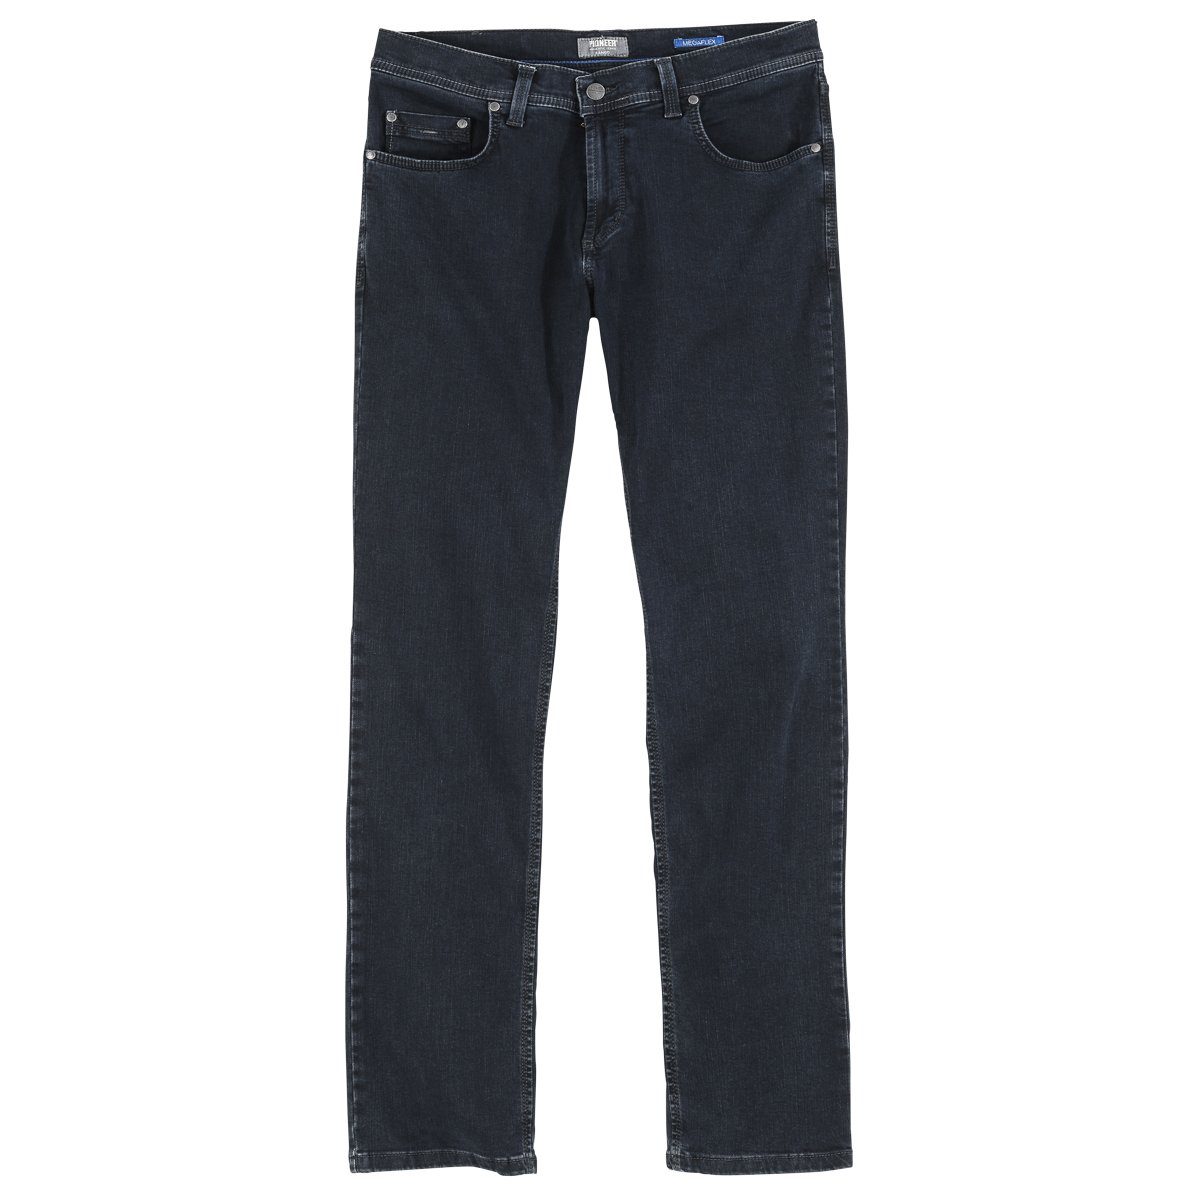 Pionier Bequeme Jeans Übergrößen Jeans Pioneer rinse Megaflex black Rando blue